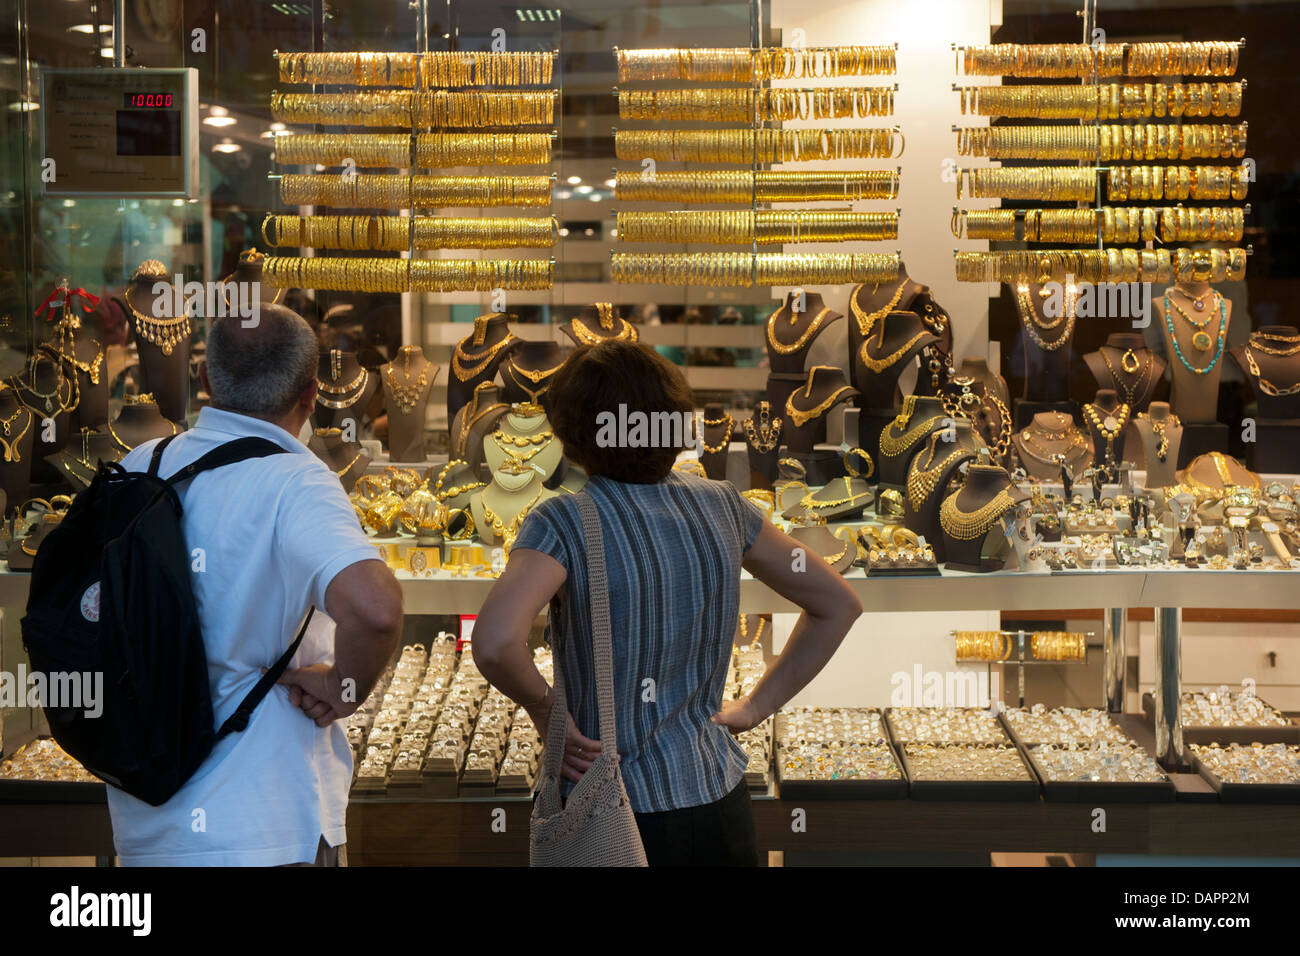 Türkei, Antalya-Stadt, Touristenbazaar, Touristen vor der Auslage eines Juweliergeschäftes Foto Stock